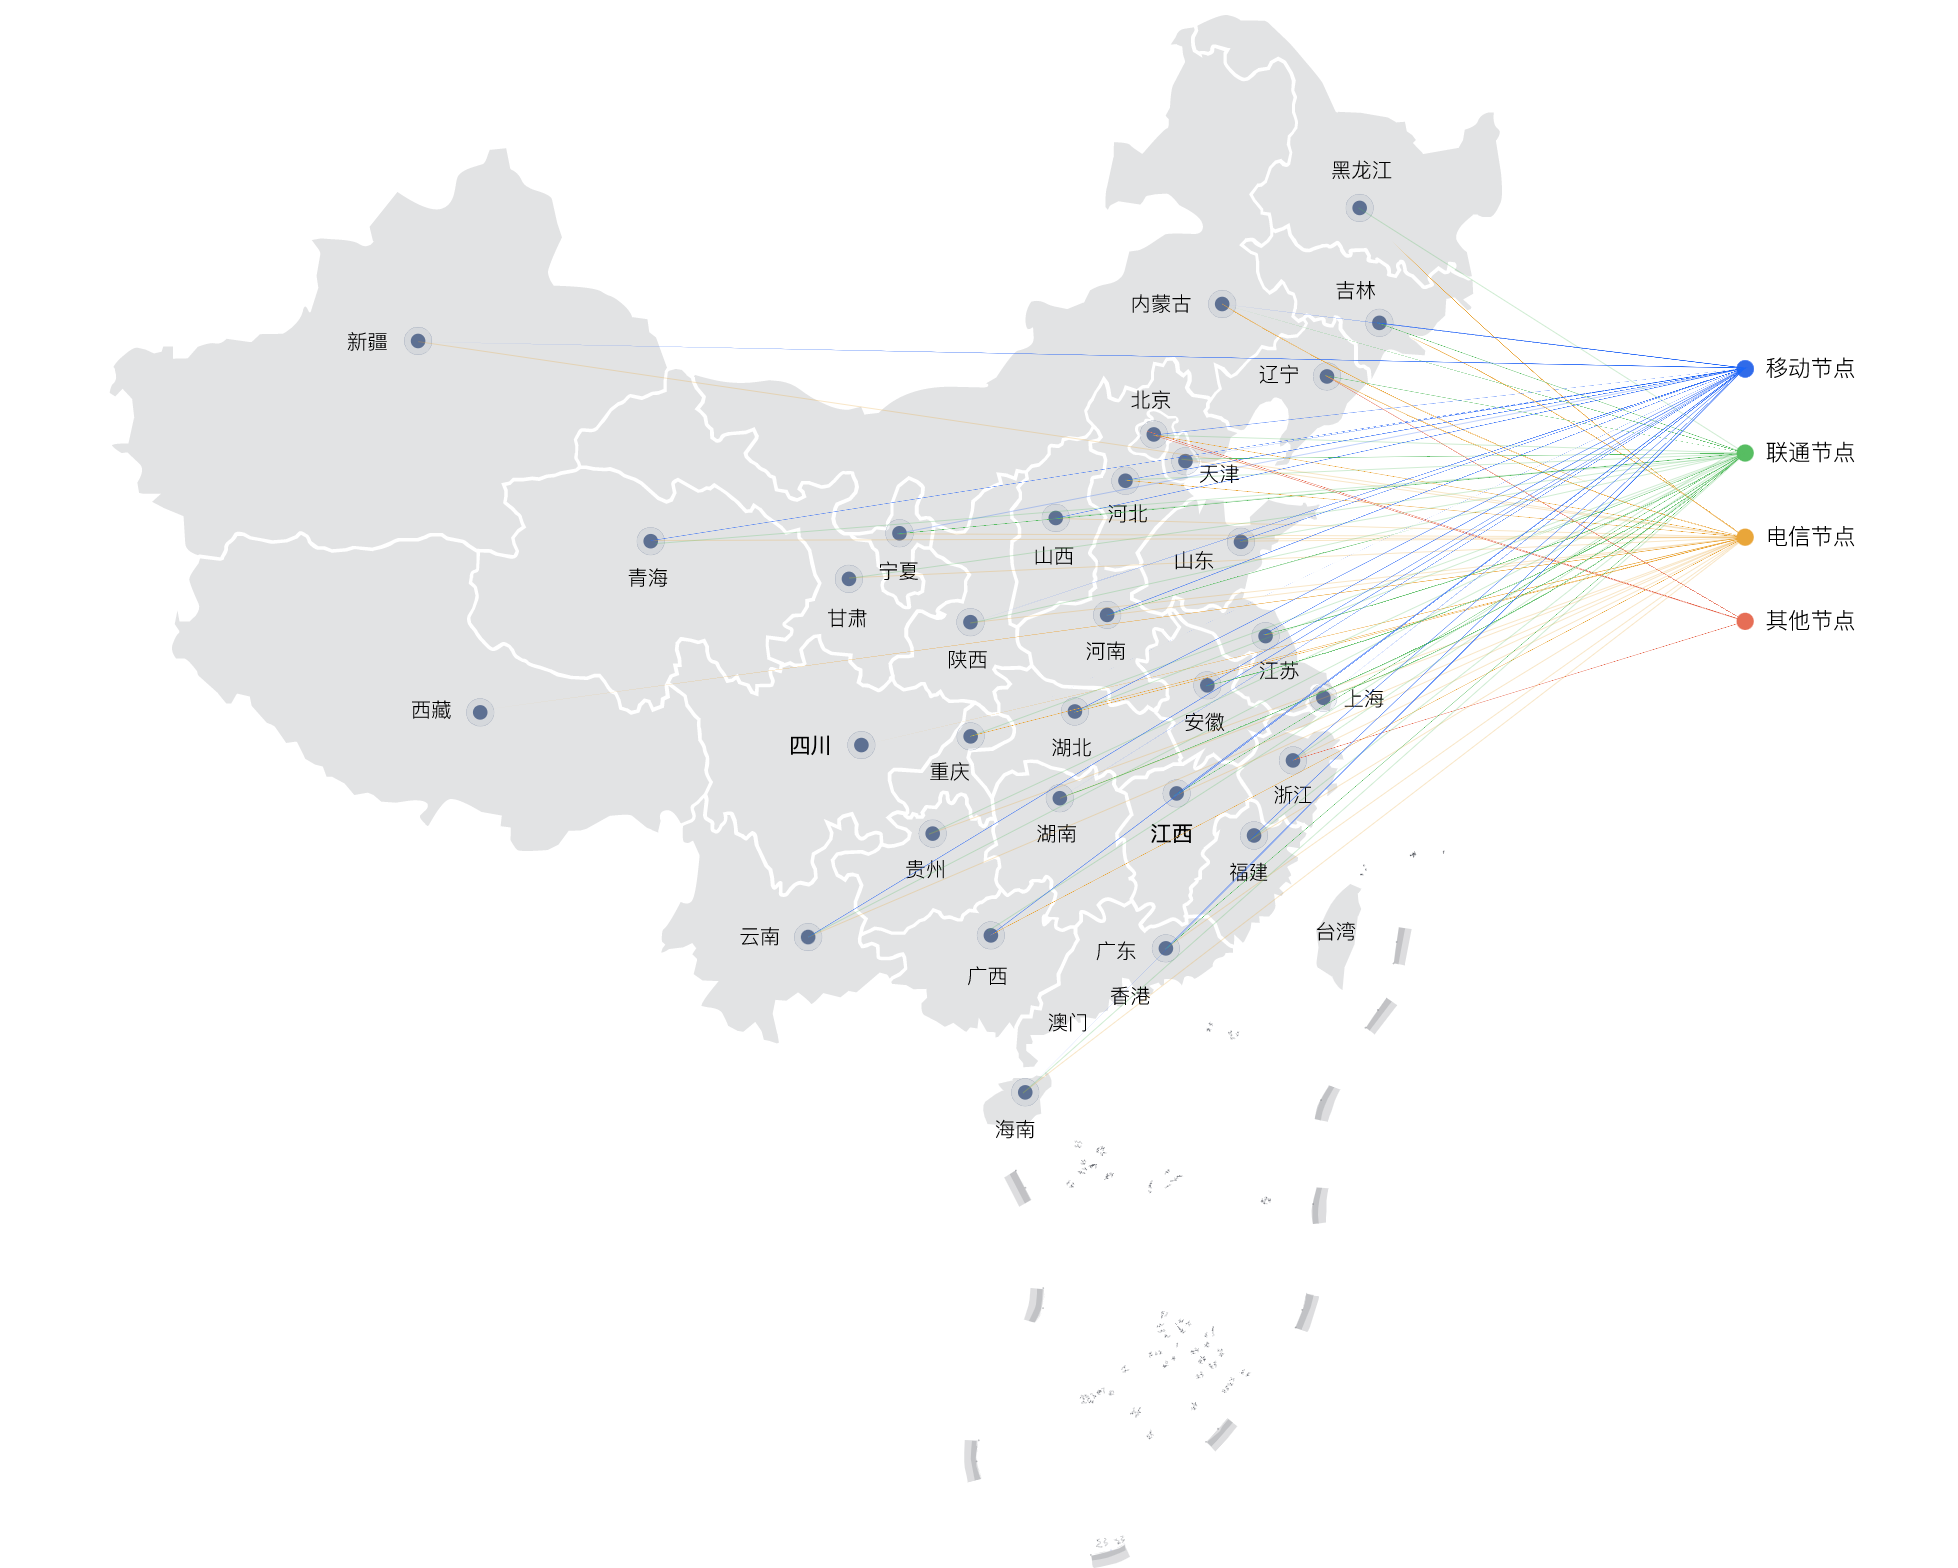 CDN-节点分布地图-new.png